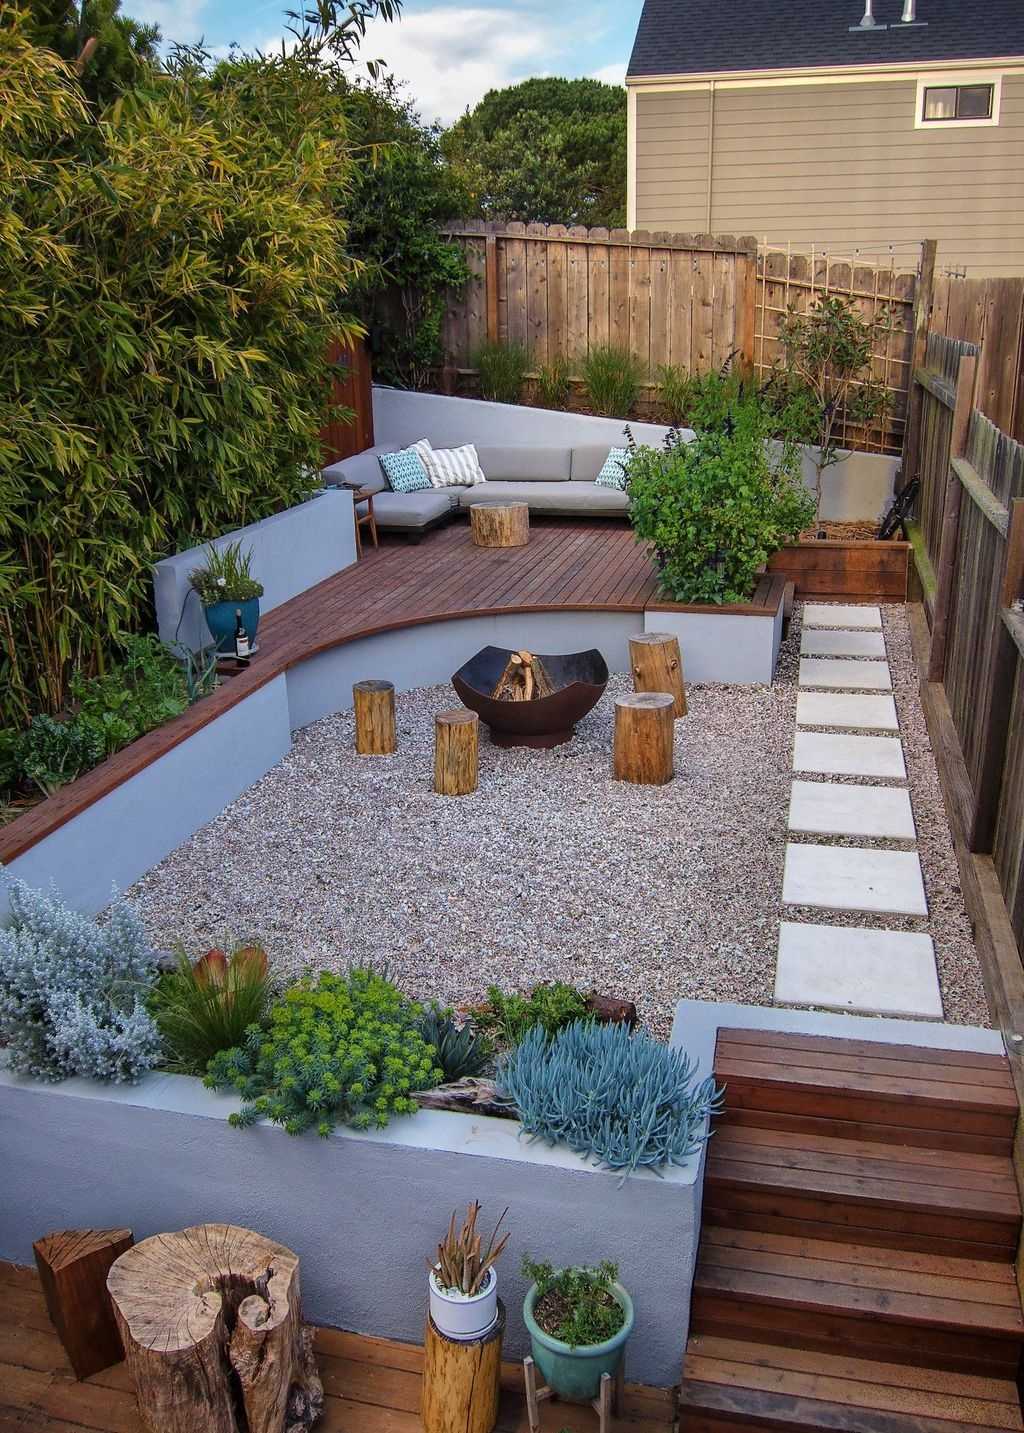 30 Perfect Small Backyard & Garden Design Ideas - Page 21 of 30 - Gardenholic